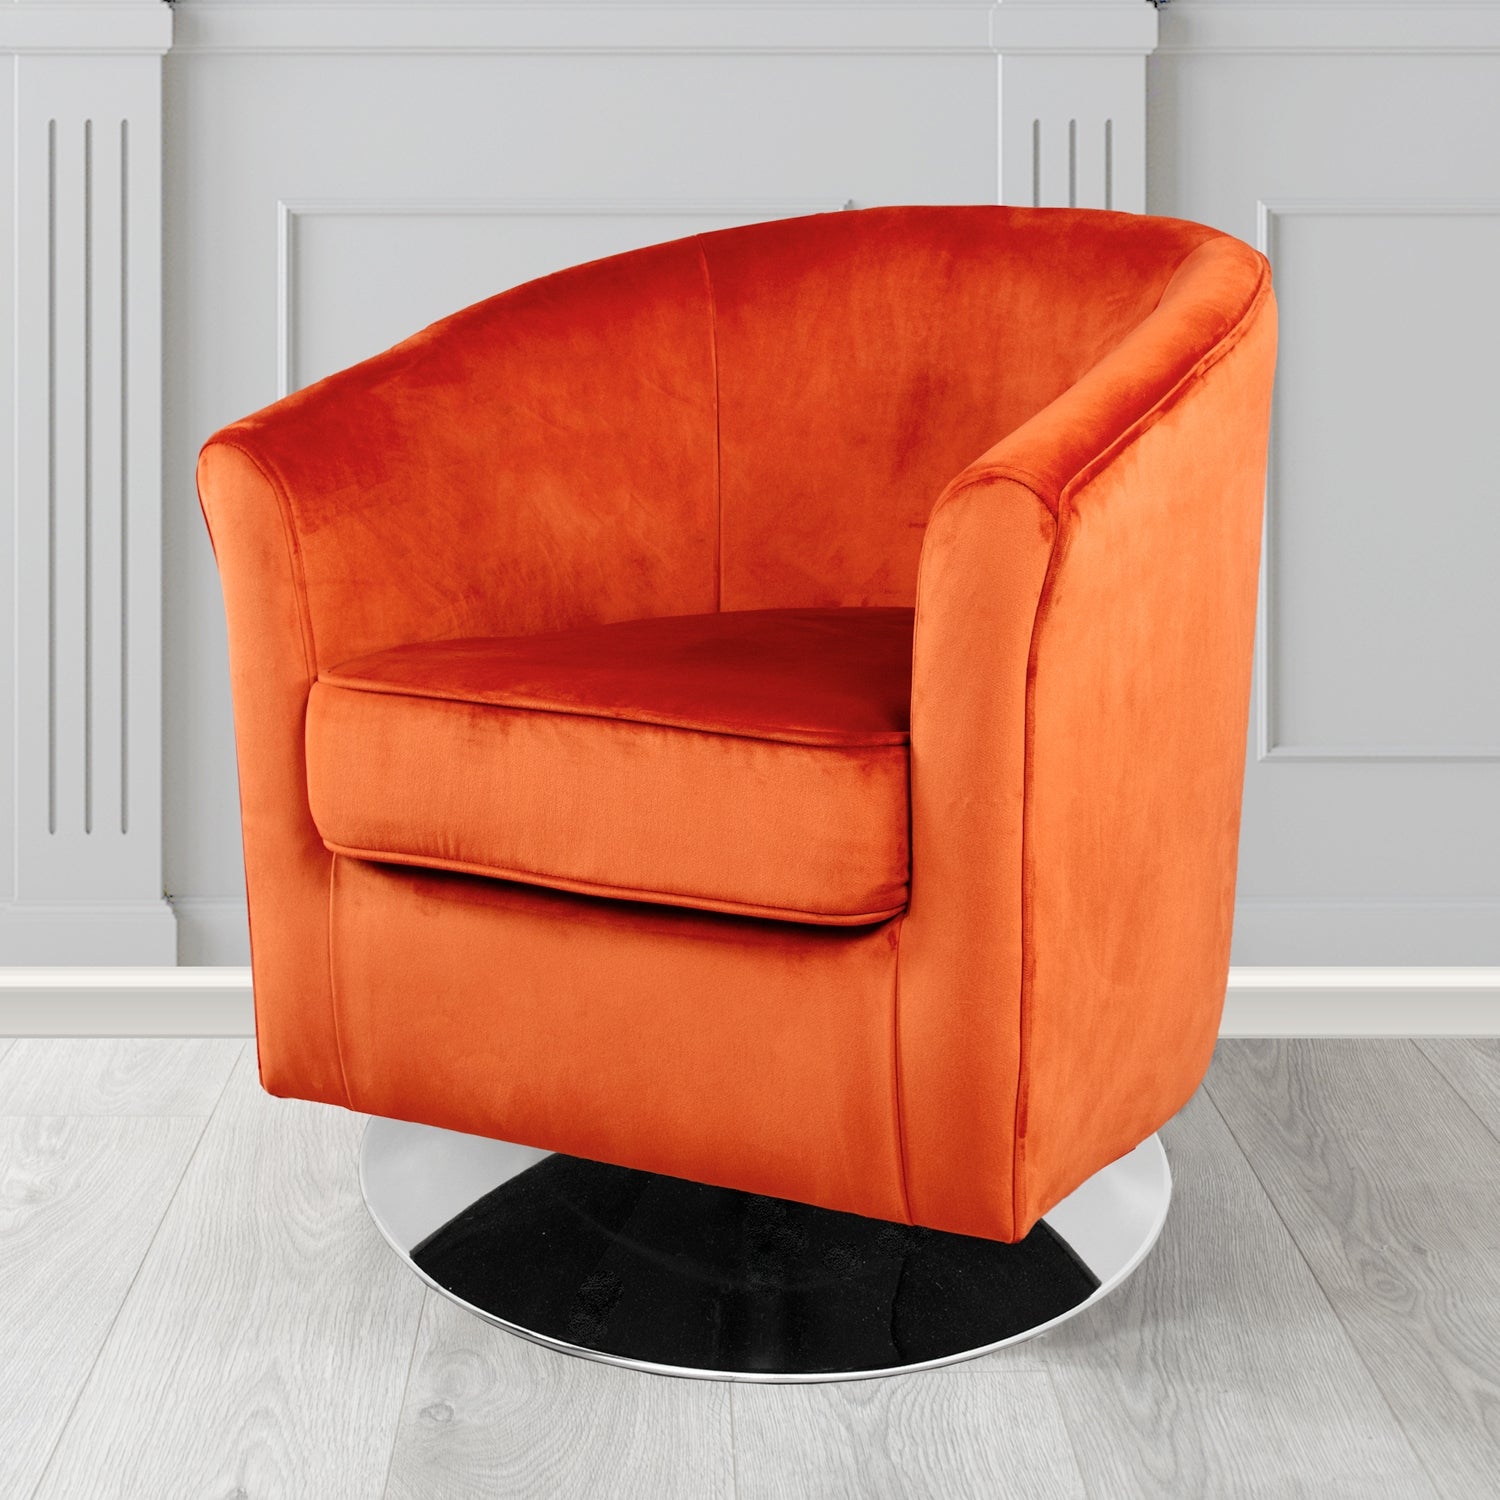 Devon Swivel Tub Chair in Monaco Pumpkin Velvet Fabric - The Tub Chair Shop